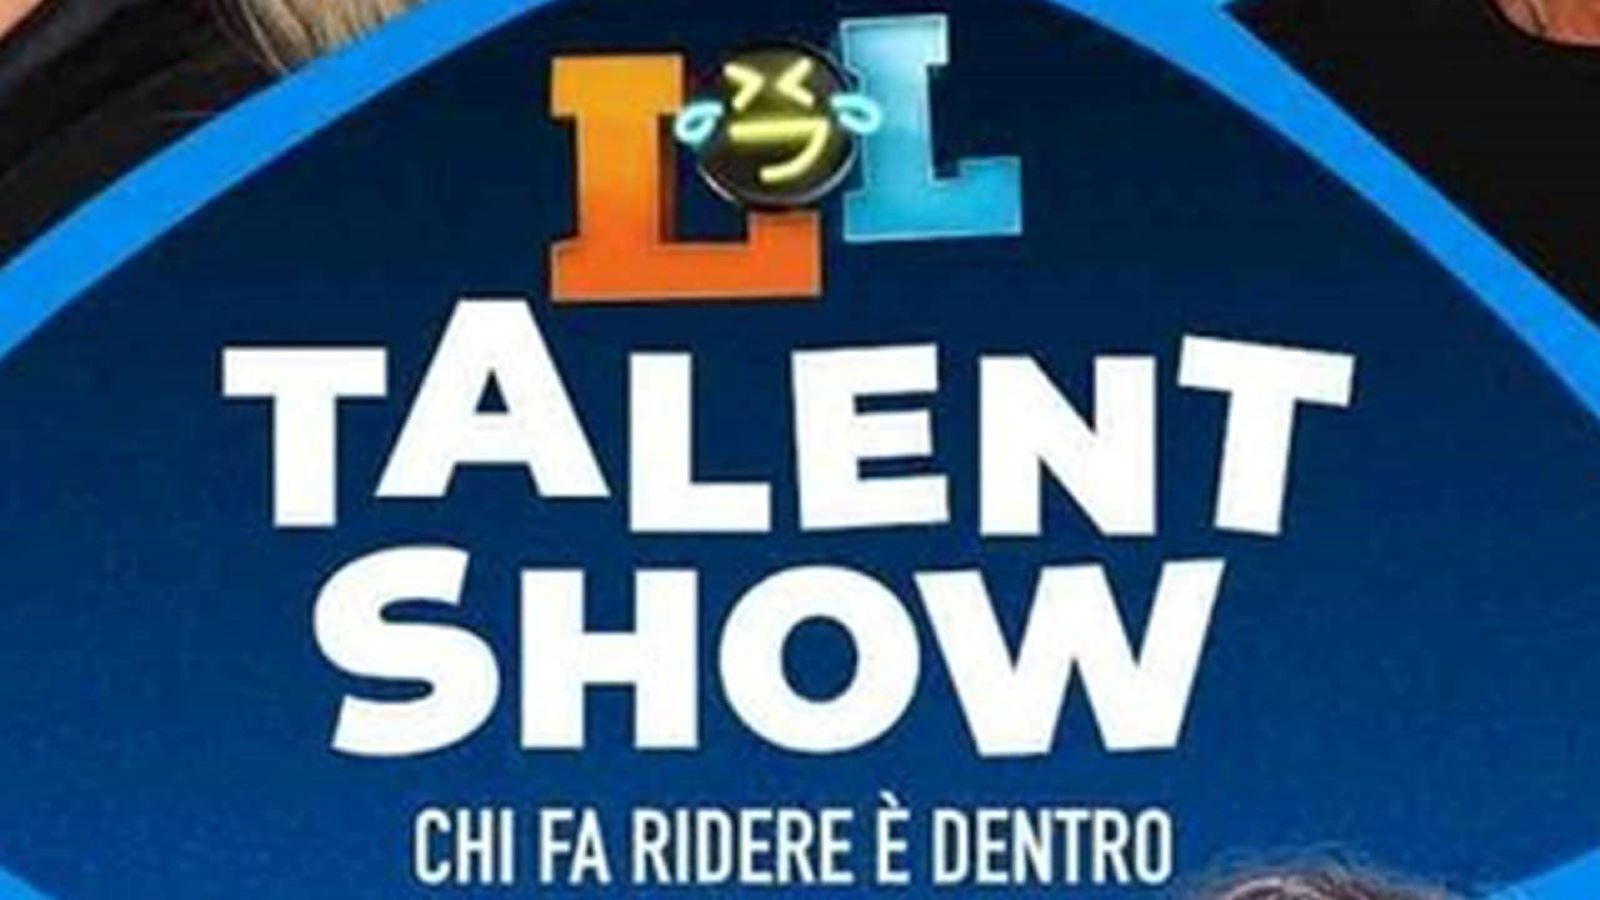 LOL Talent Show: Chi fa ridere è dentro, la prima tappa e a Milano